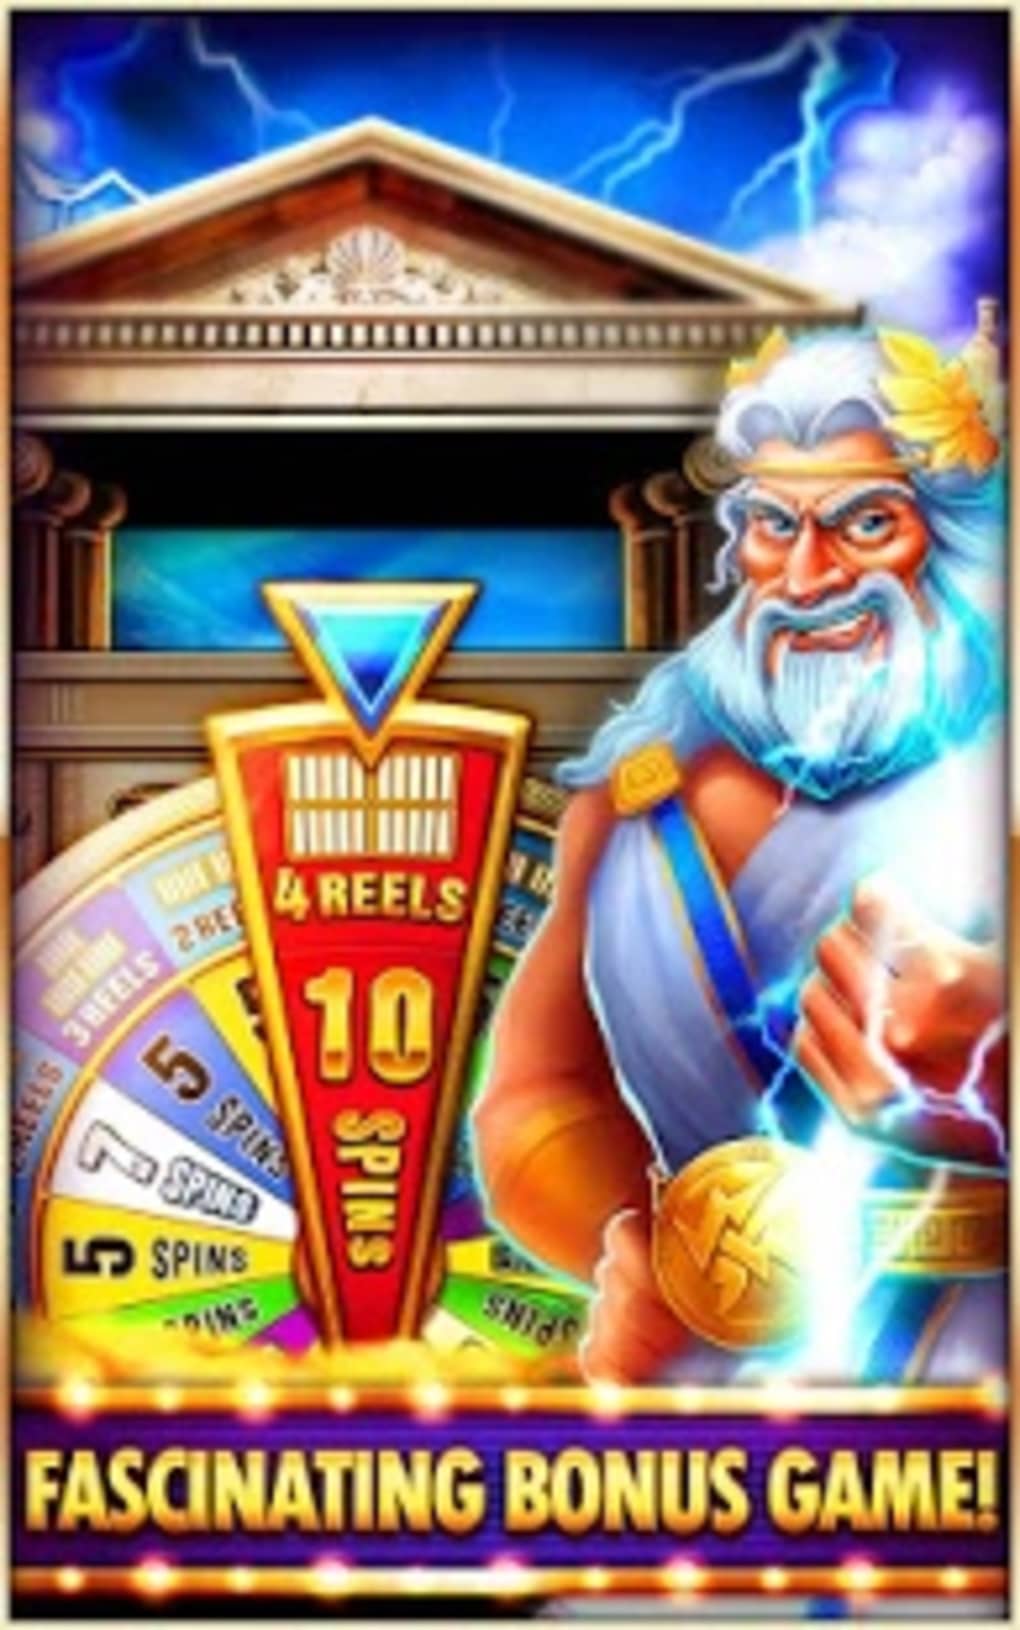 doubleu casino download free